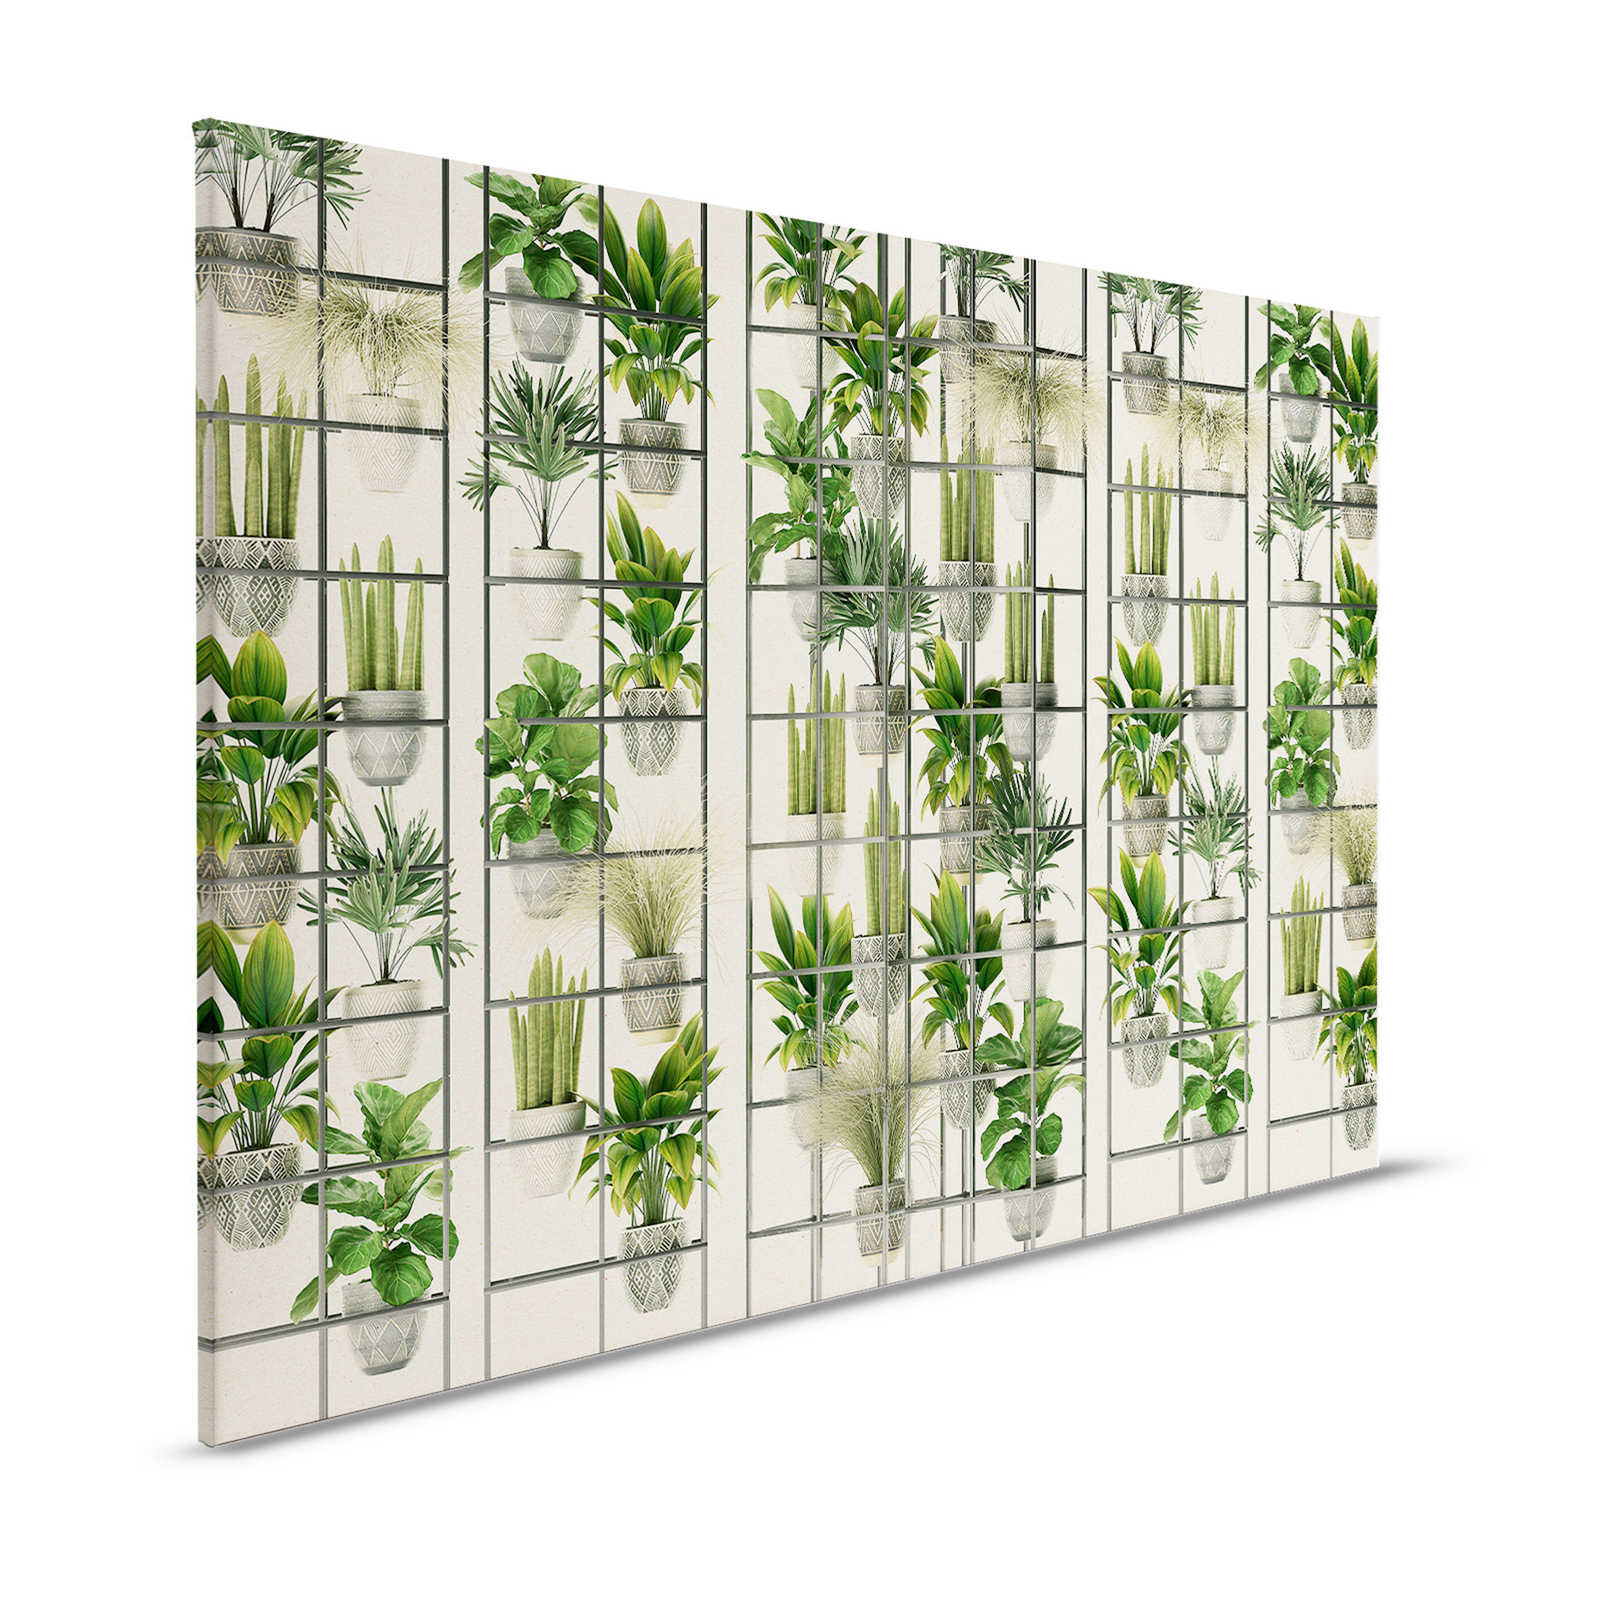 Plant Shop 2 - Tableau de plantes moderne en toile vert & gris - 1,20 m x 0,80 m
